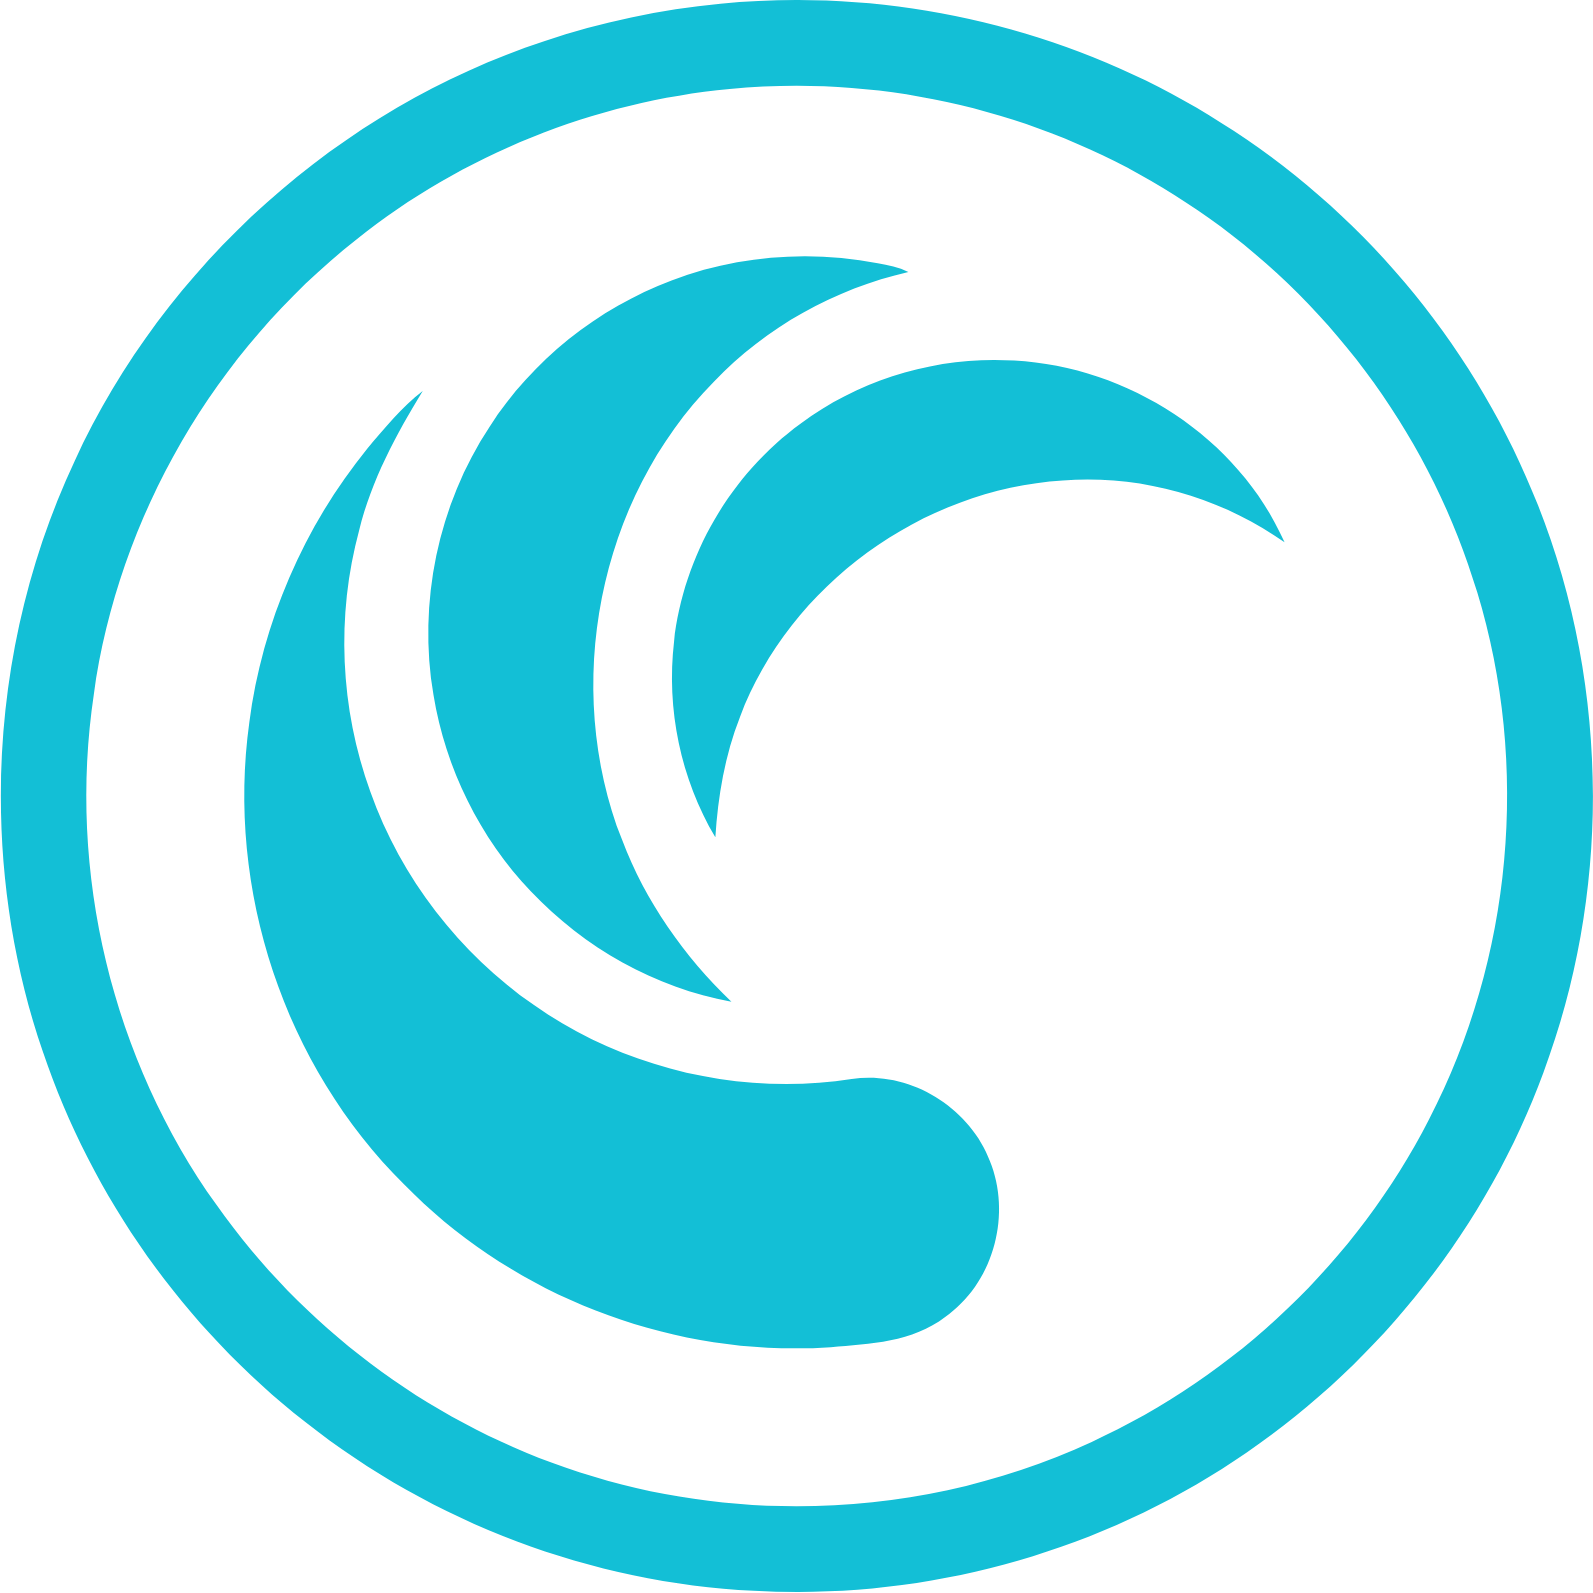 TD Synnex logo (transparent PNG)